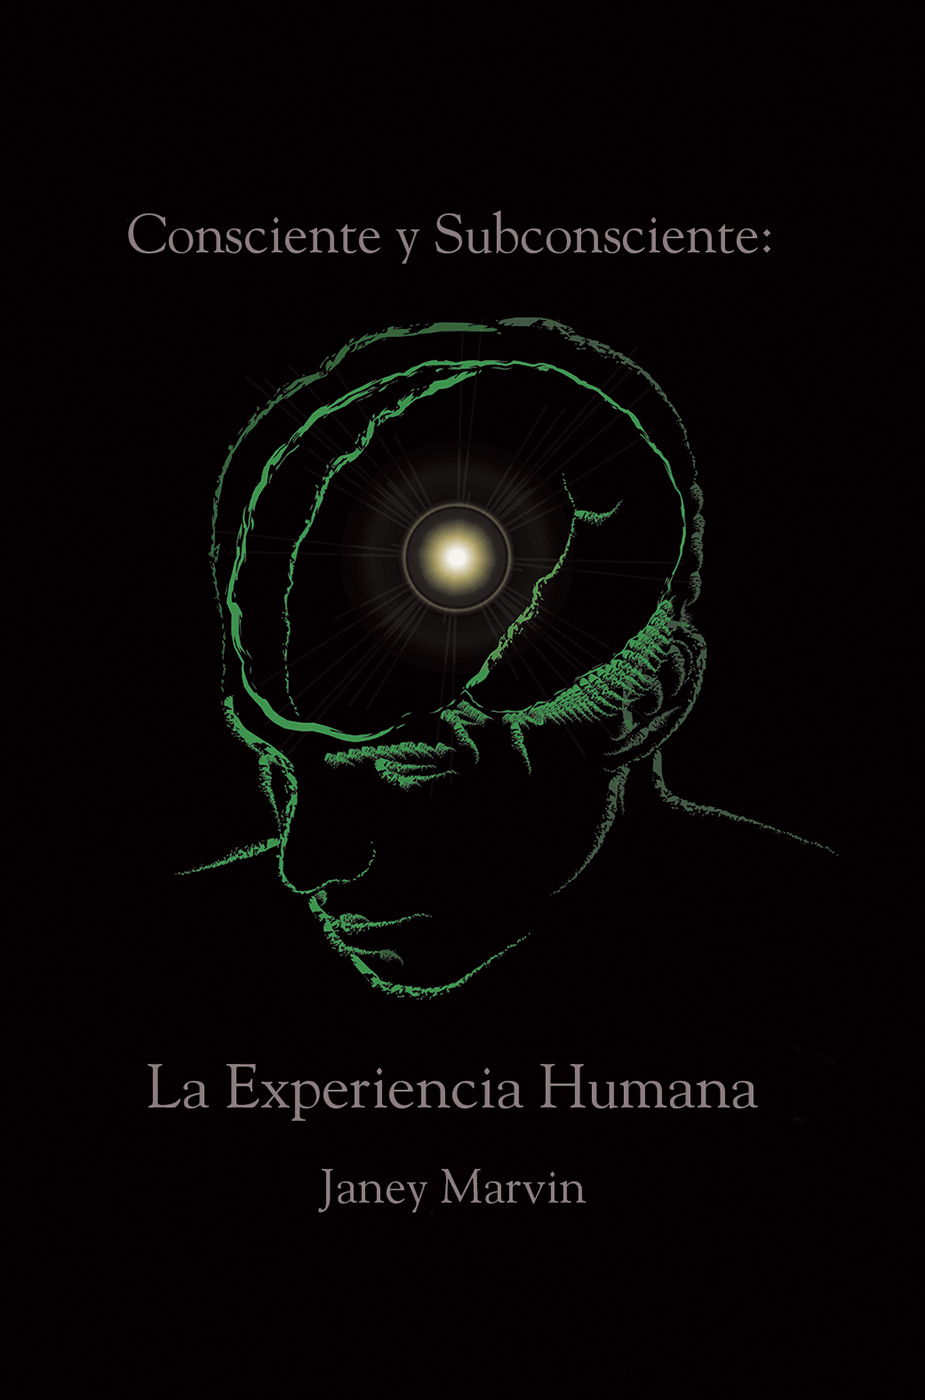 xxx Consciente y Subconsciente La Experiencia Humana Derechos de Autor - photo 1